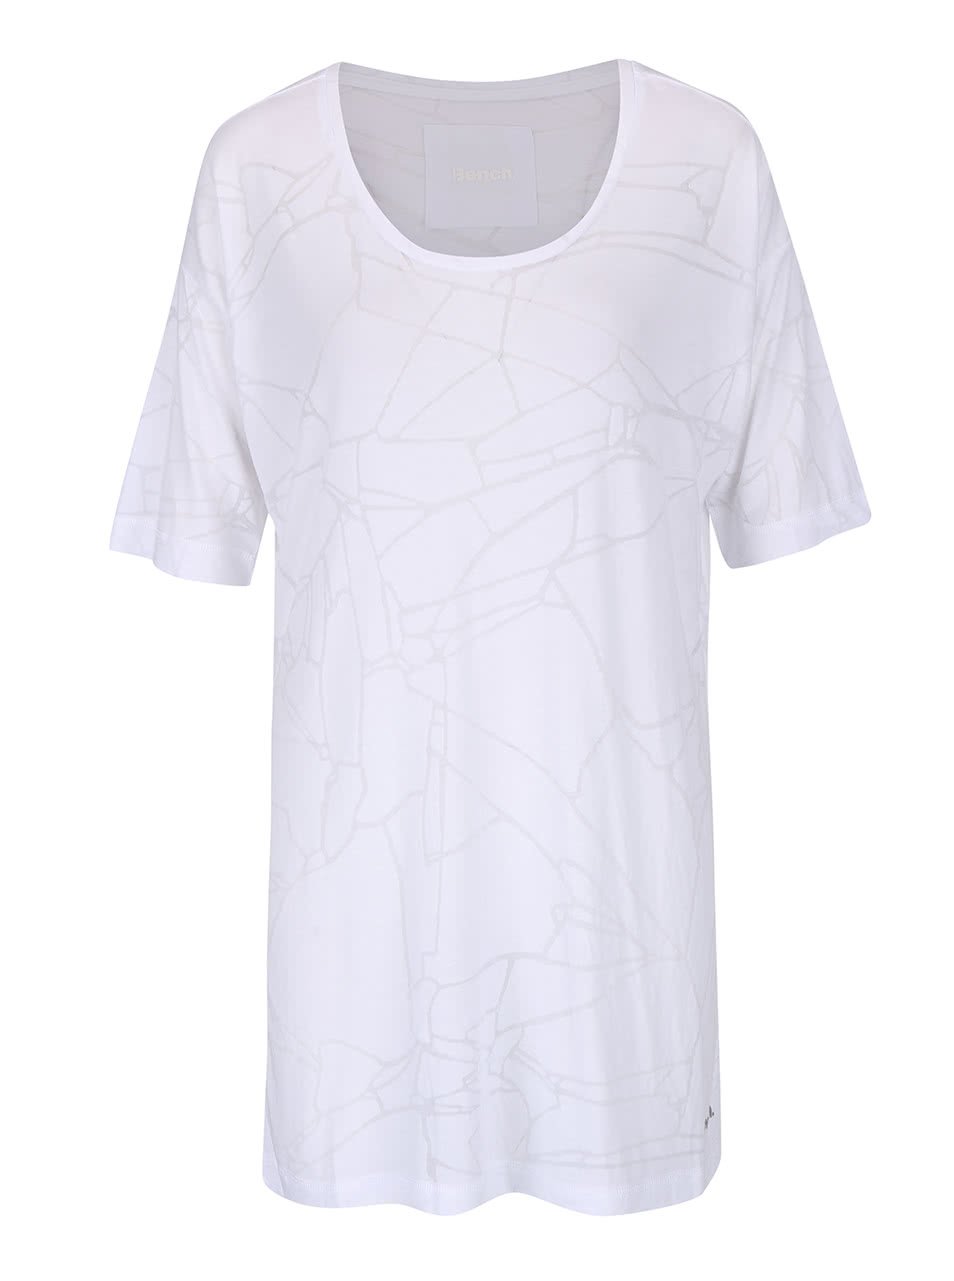 Bílé dámské oversize tričko s jemným vzorem Bench Corridor